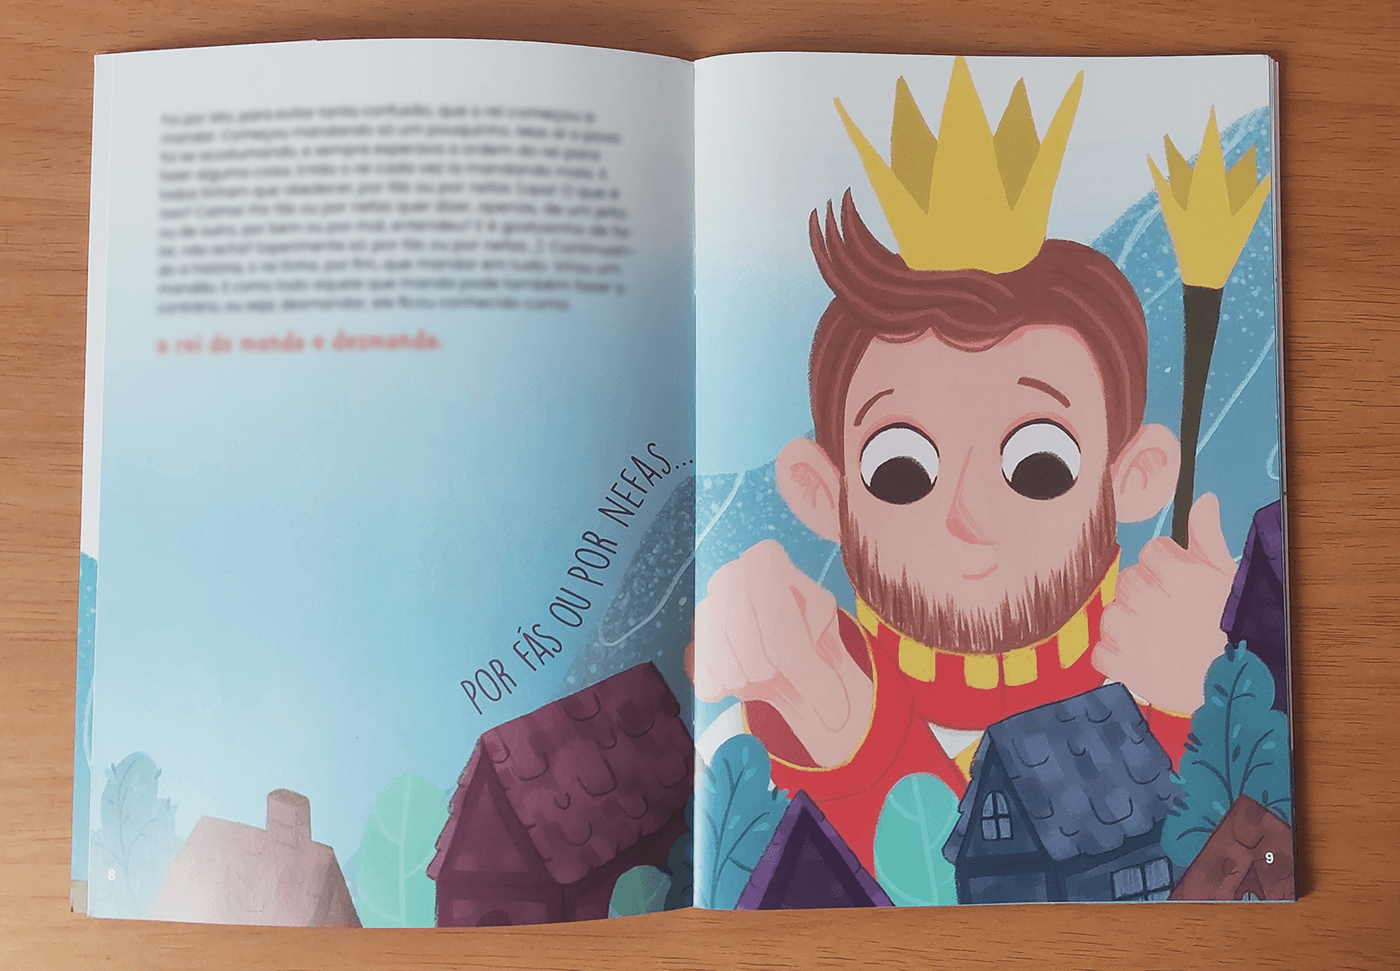 livro infantil children's book children illustration Picture book kidlit digital illustration kids king crown literatura infantil